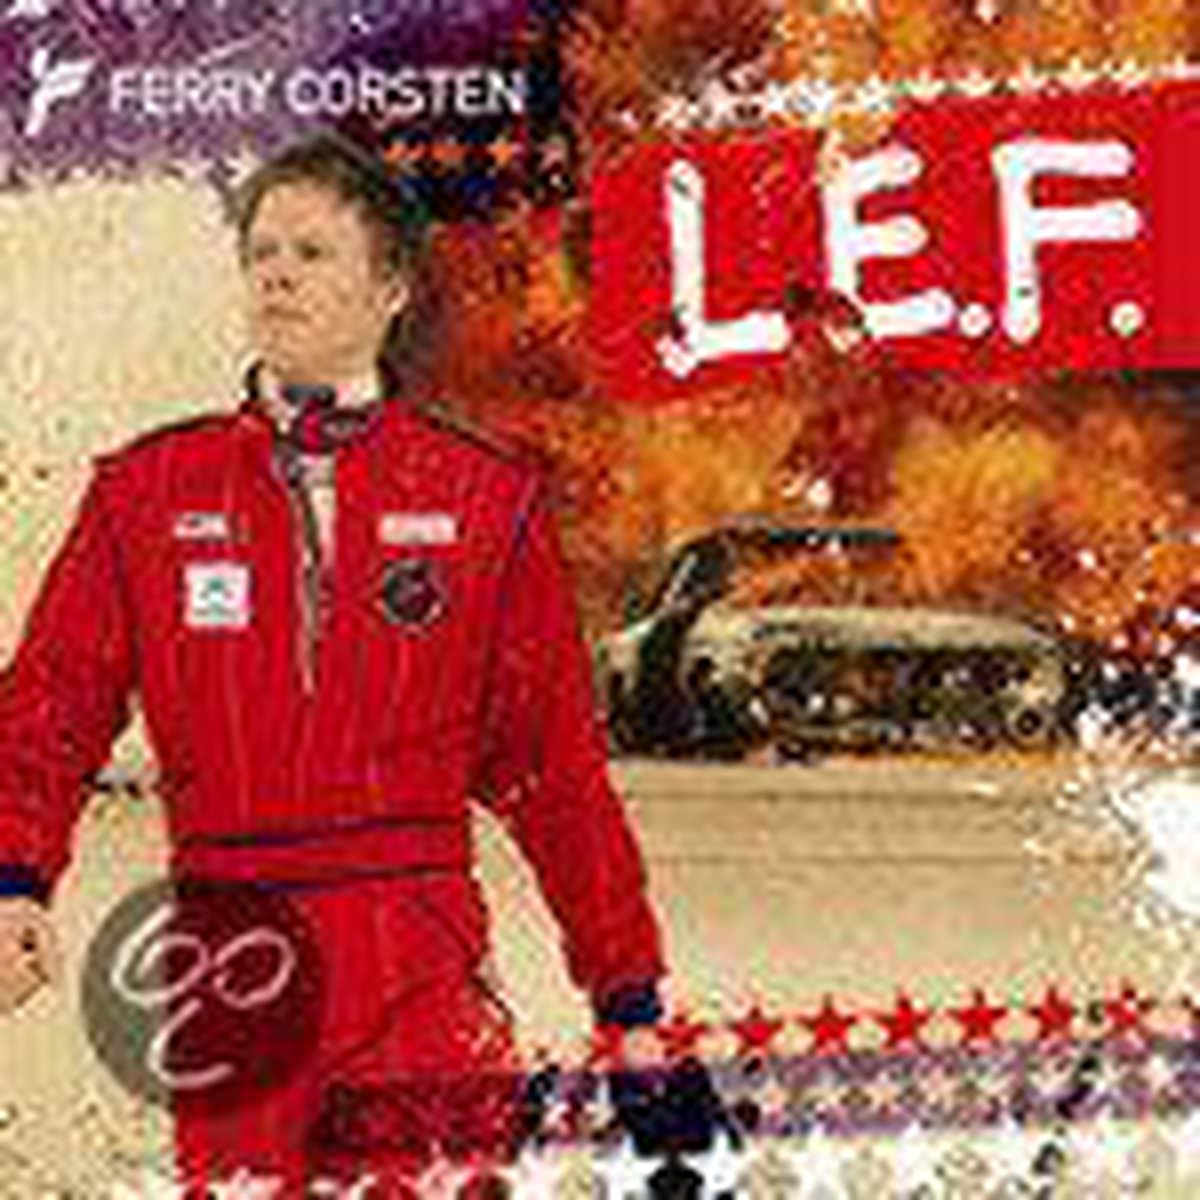 L.E.F. - Ferry Corsten